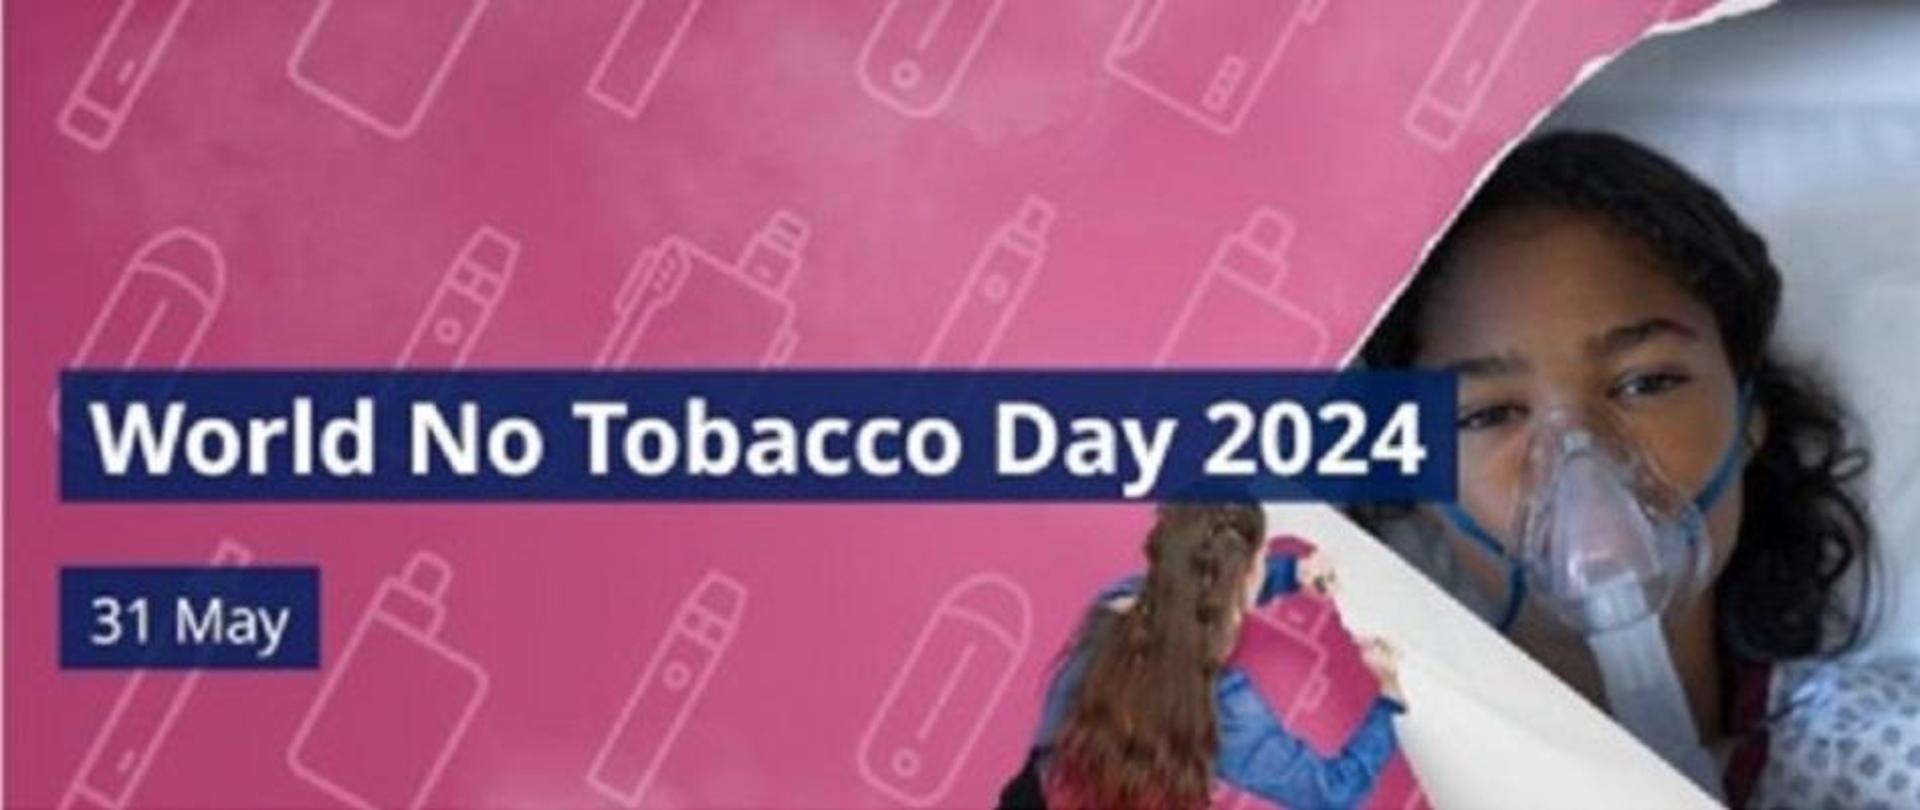  Grafika WHO symbolizująca, że młodzi ludzie demaskują taktykę przemysłu tytoniowego.